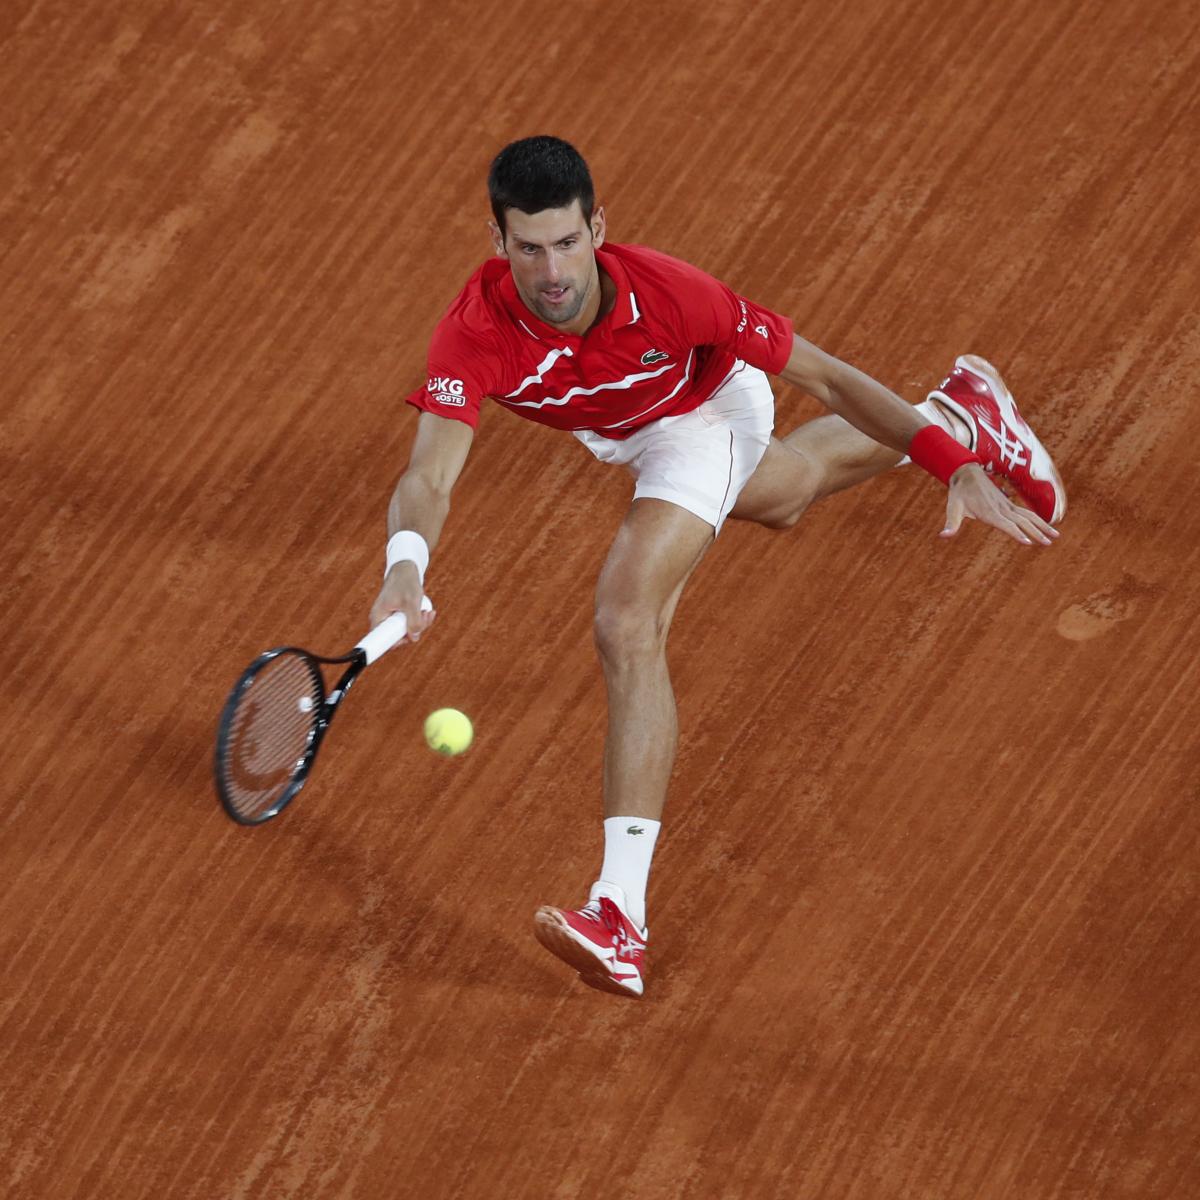 French Open 2020 Men's Final: Live Stream for Novak Djokovic vs. Rafael